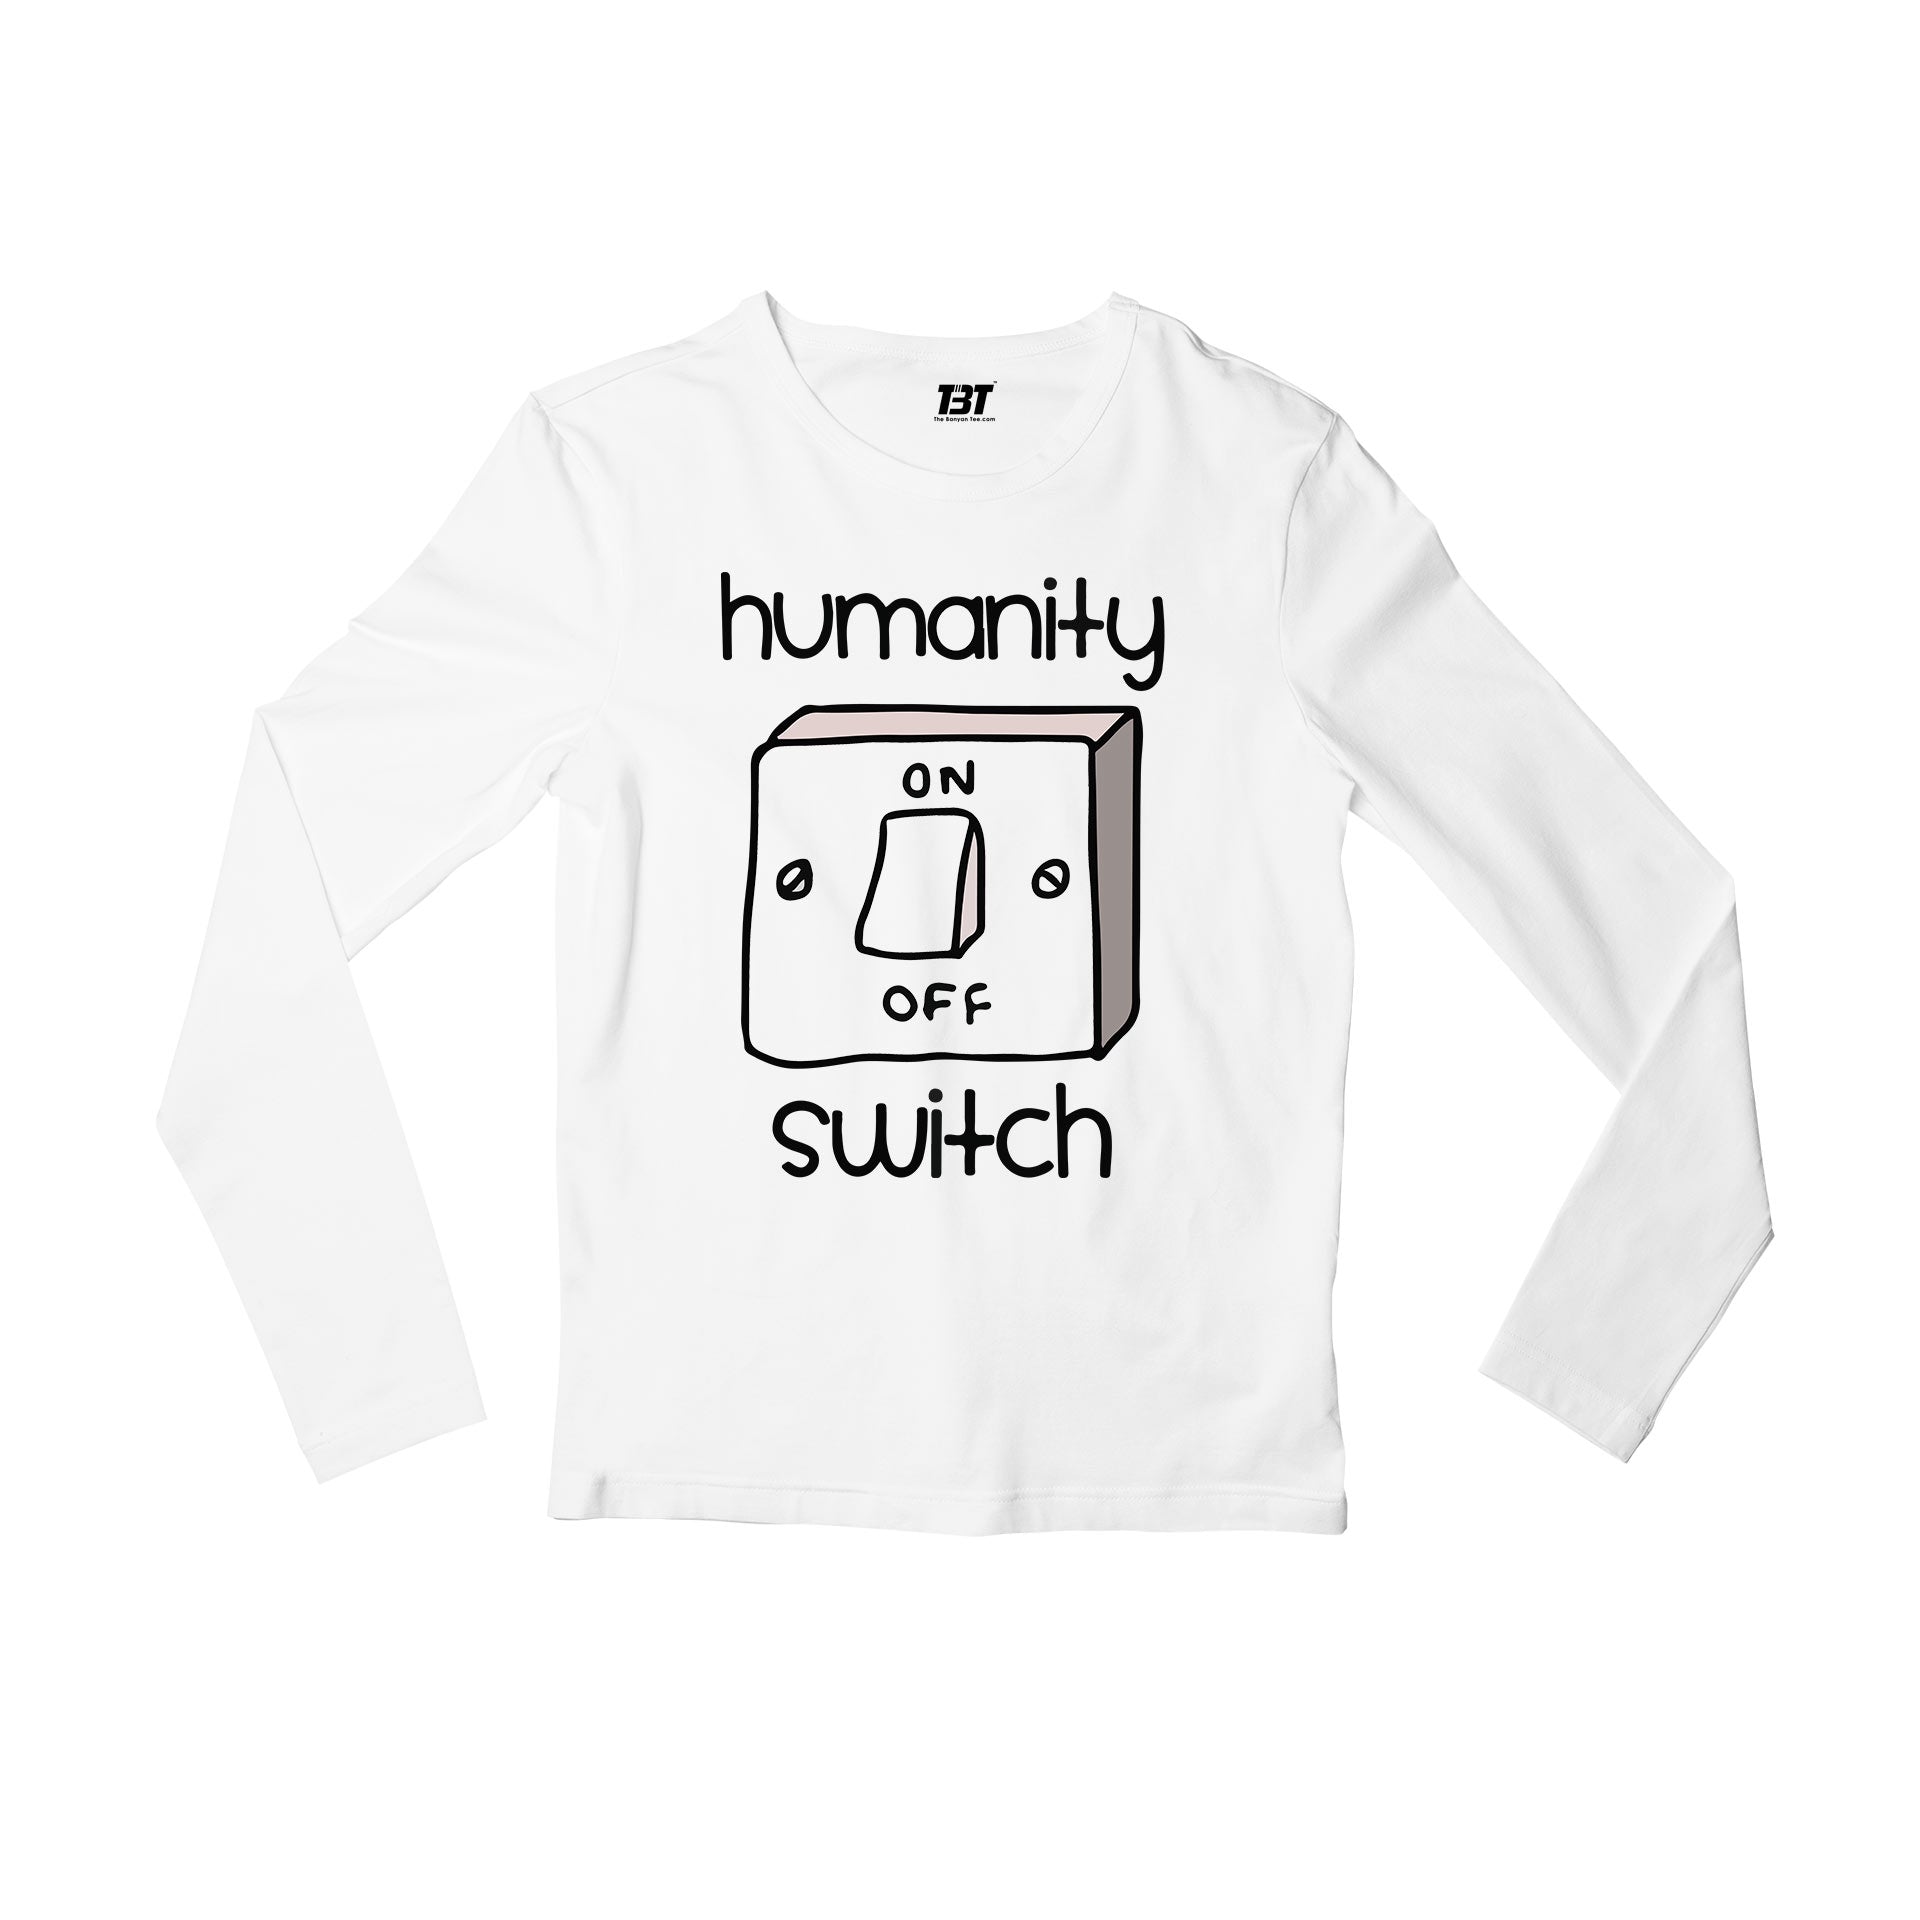 The Vampire Diaries Full Sleeves T-shirt - Humanity Switch Full Sleeves T-shirt The Banyan Tee TBT